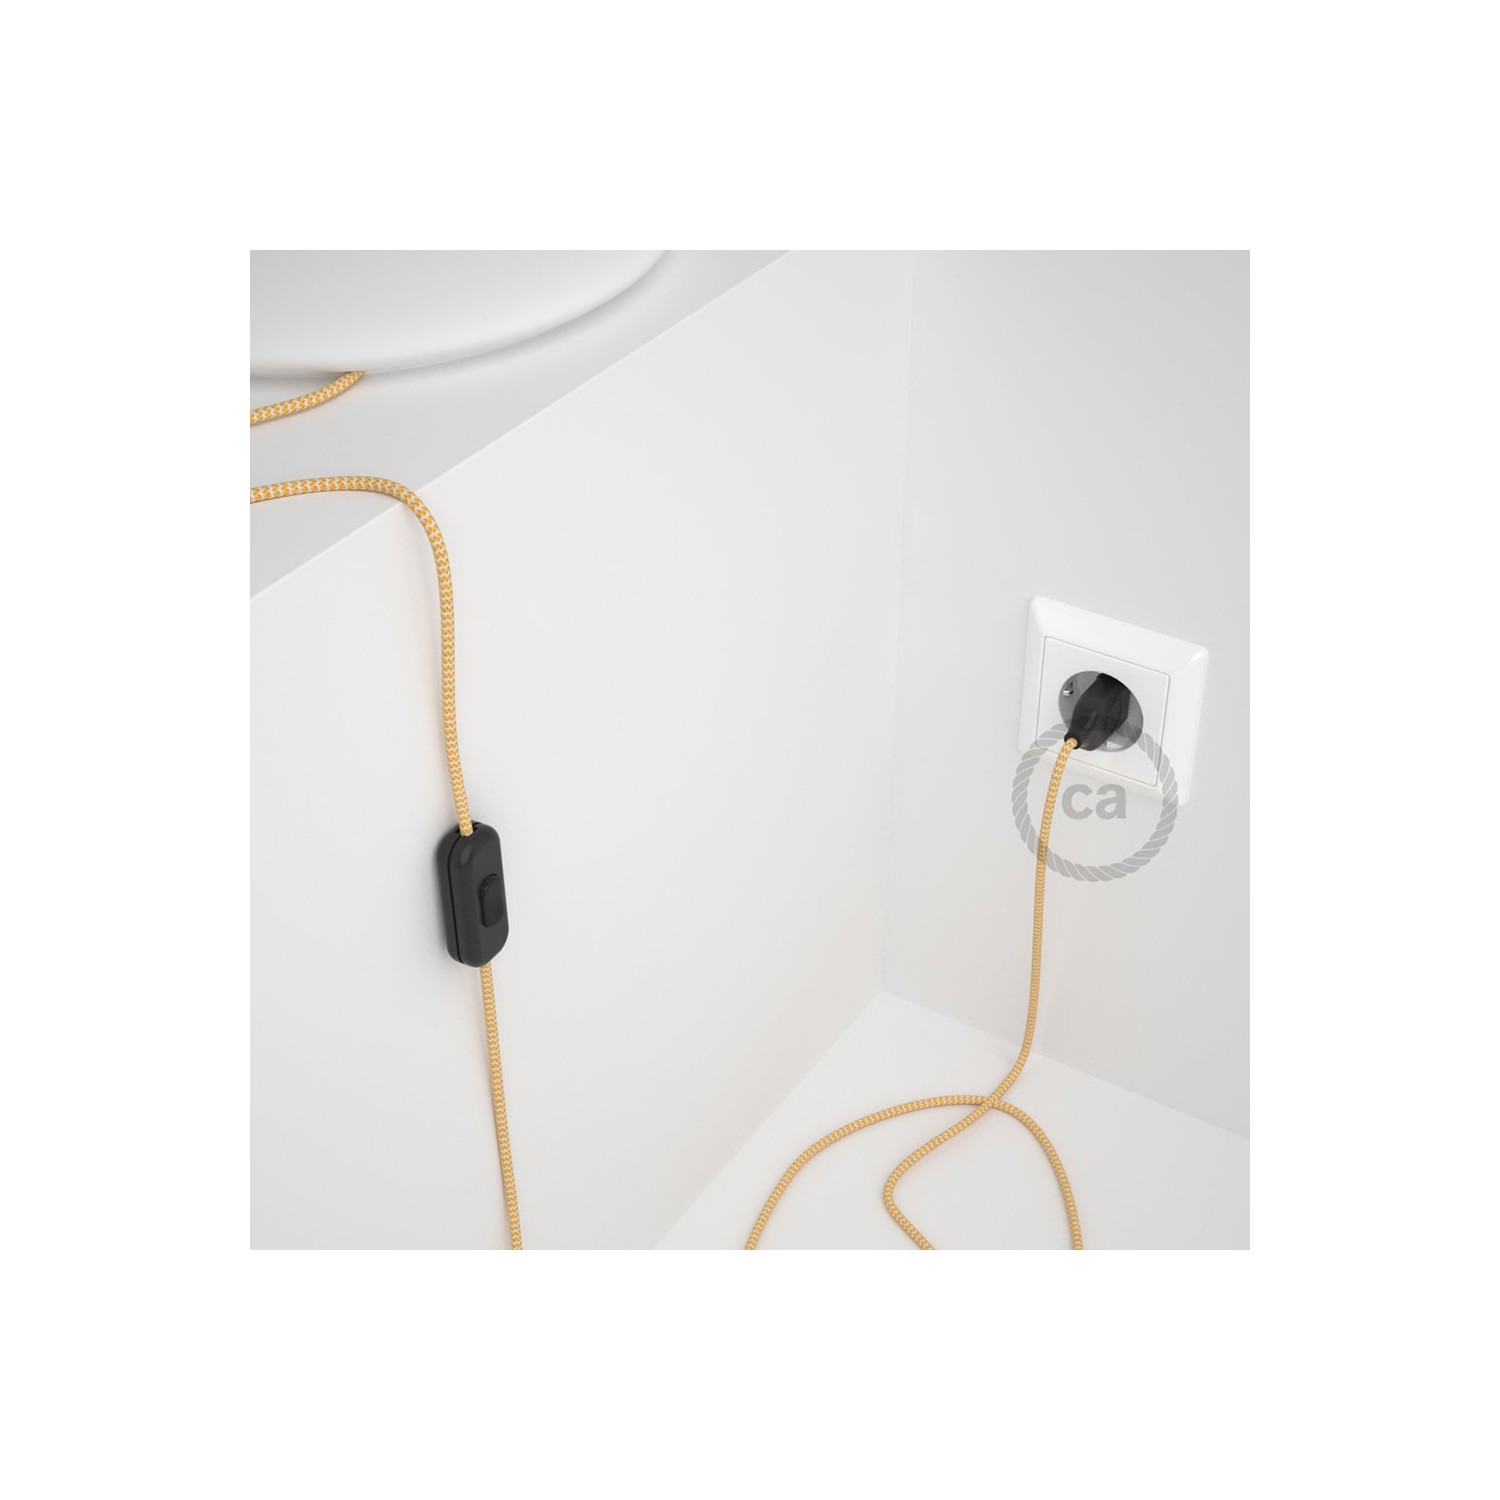 Cordon pour lampe, câble RZ10 Effet Soie ZigZag Blanc-Jaune 1,80 m. Choisissez la couleur de la fiche et de l'interrupteur!